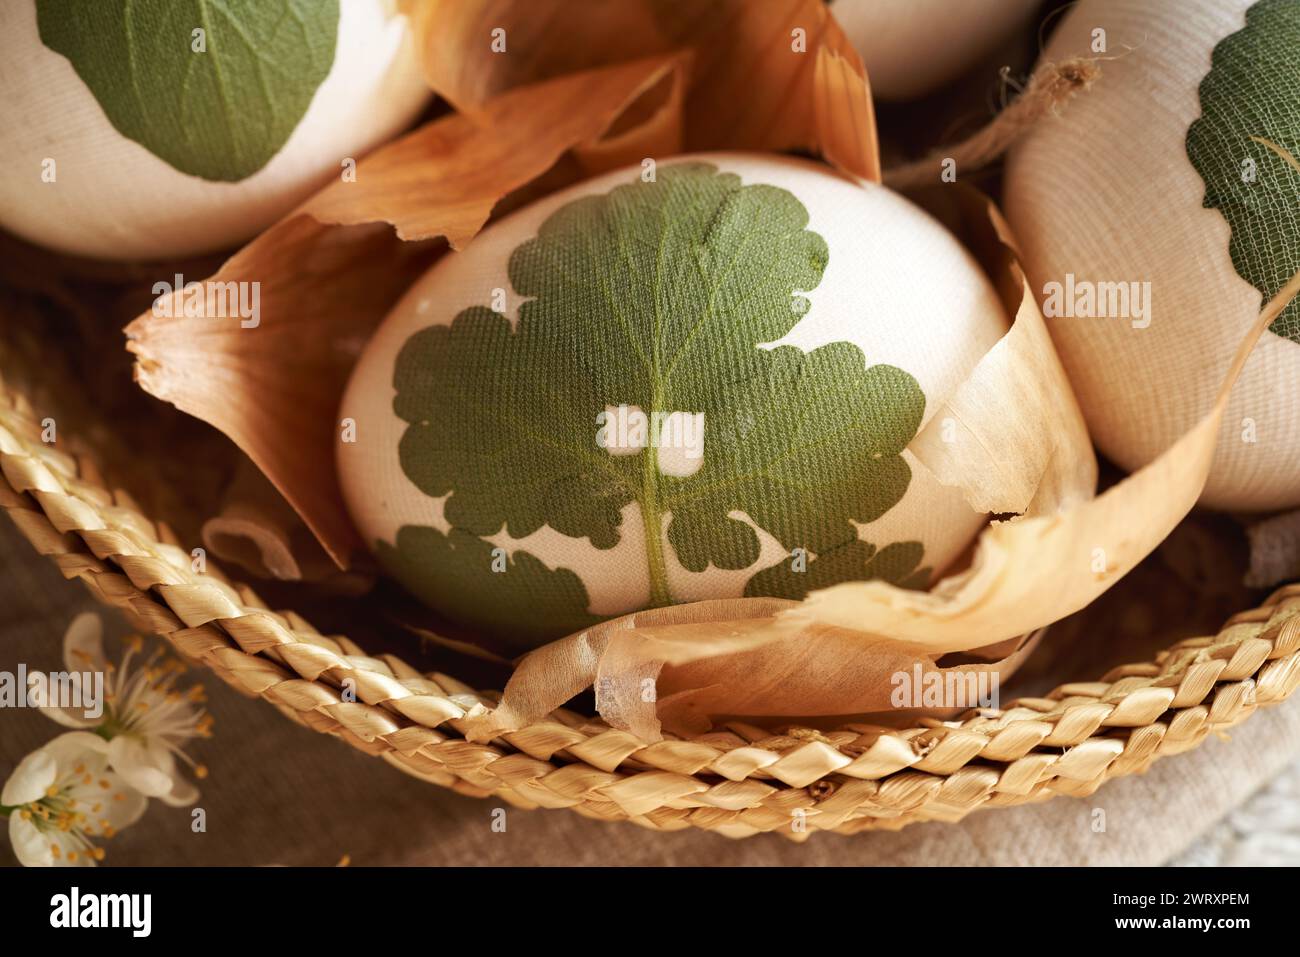 Oeuf de Pâques blanc avec feuille de célandine attachée, prêt à être teint avec des peaux d'oignon Banque D'Images